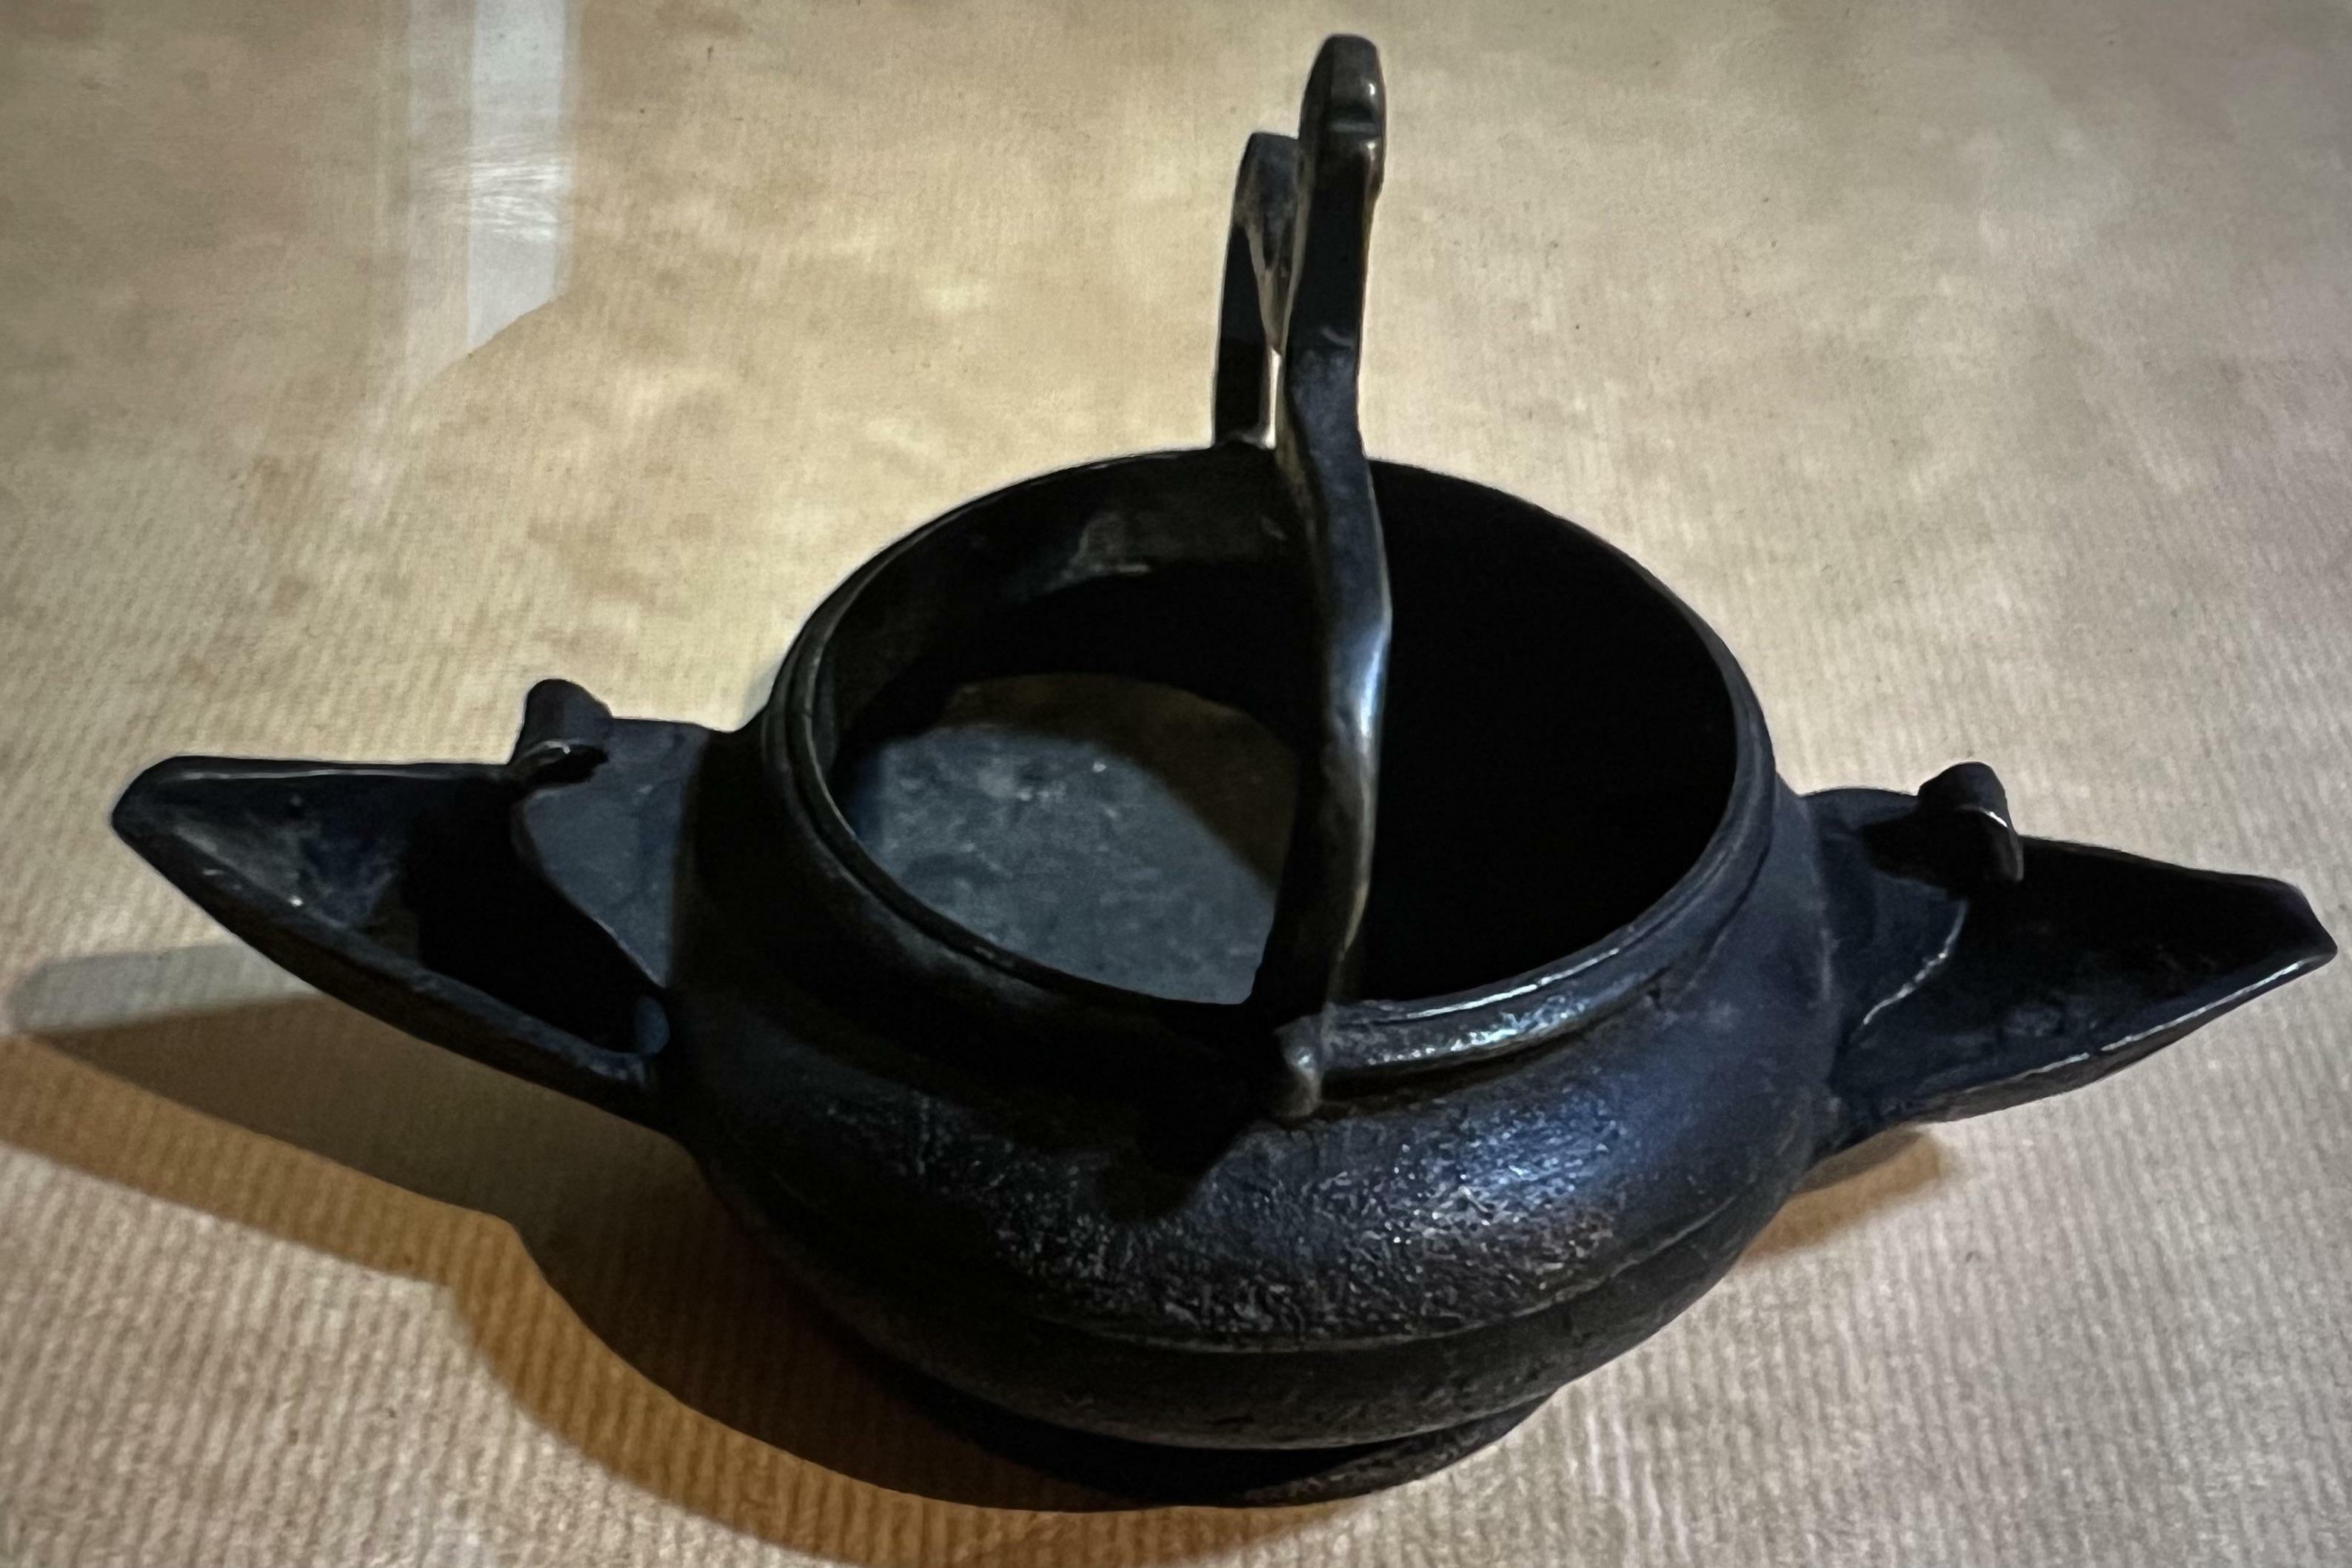 Quel est cet ancien pot en bronze à deux becs qui ressemble à un lavabo suspendu mais dont le col est trop bas pour transporter de l'eau sans la renverser ?